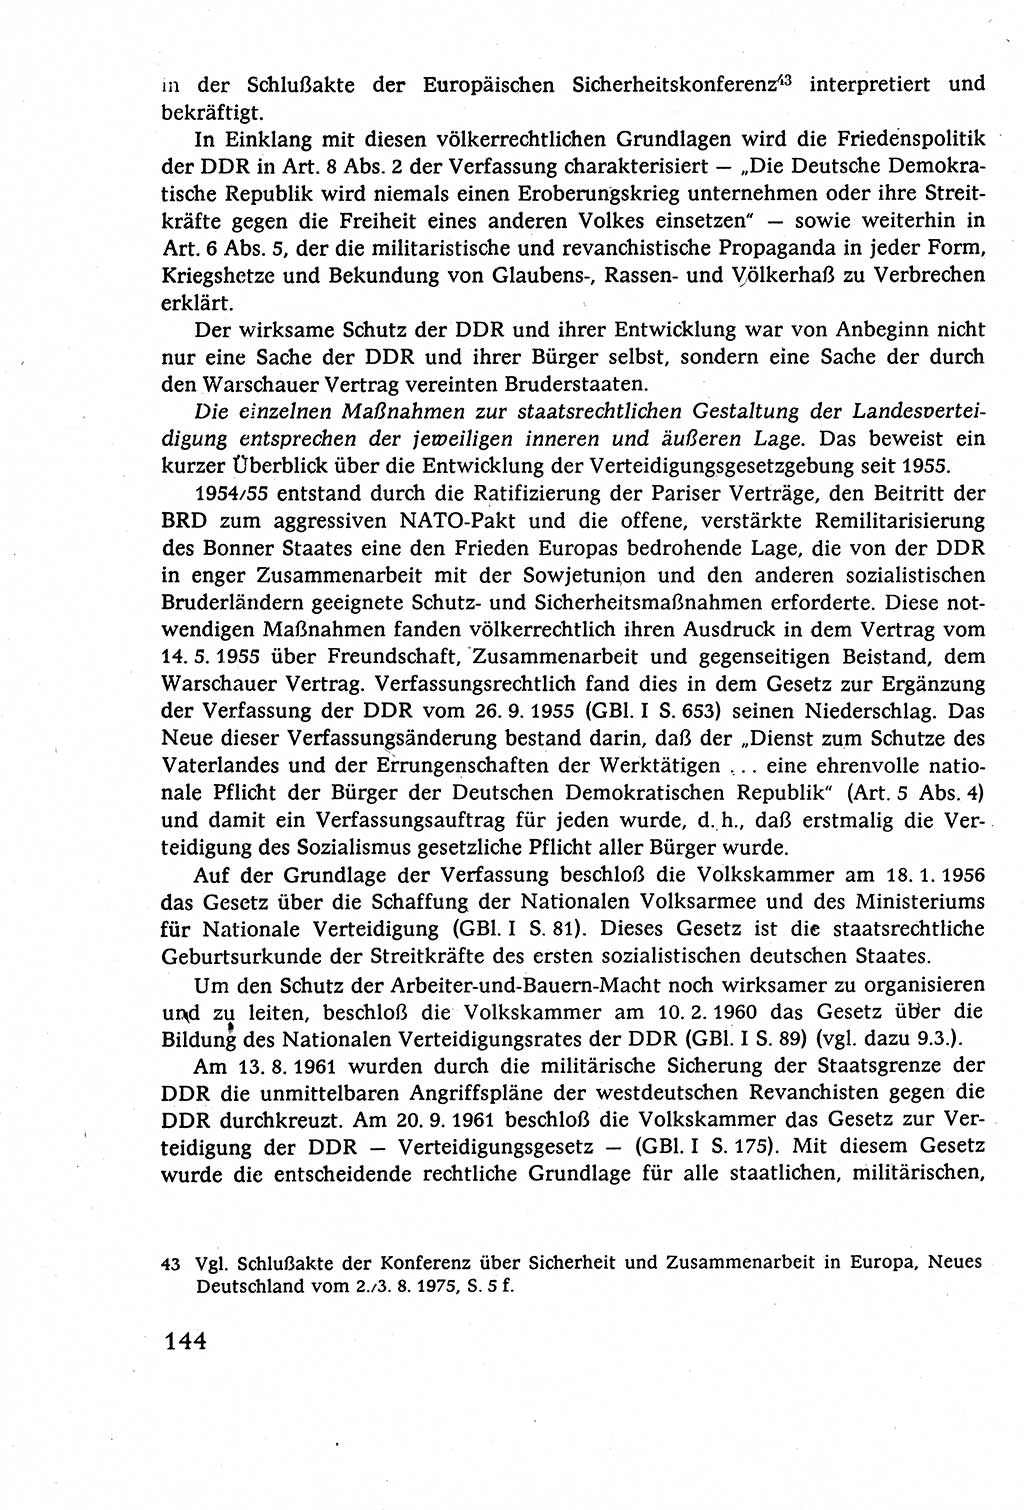 Staatsrecht der DDR (Deutsche Demokratische Republik), Lehrbuch 1977, Seite 144 (St.-R. DDR Lb. 1977, S. 144)